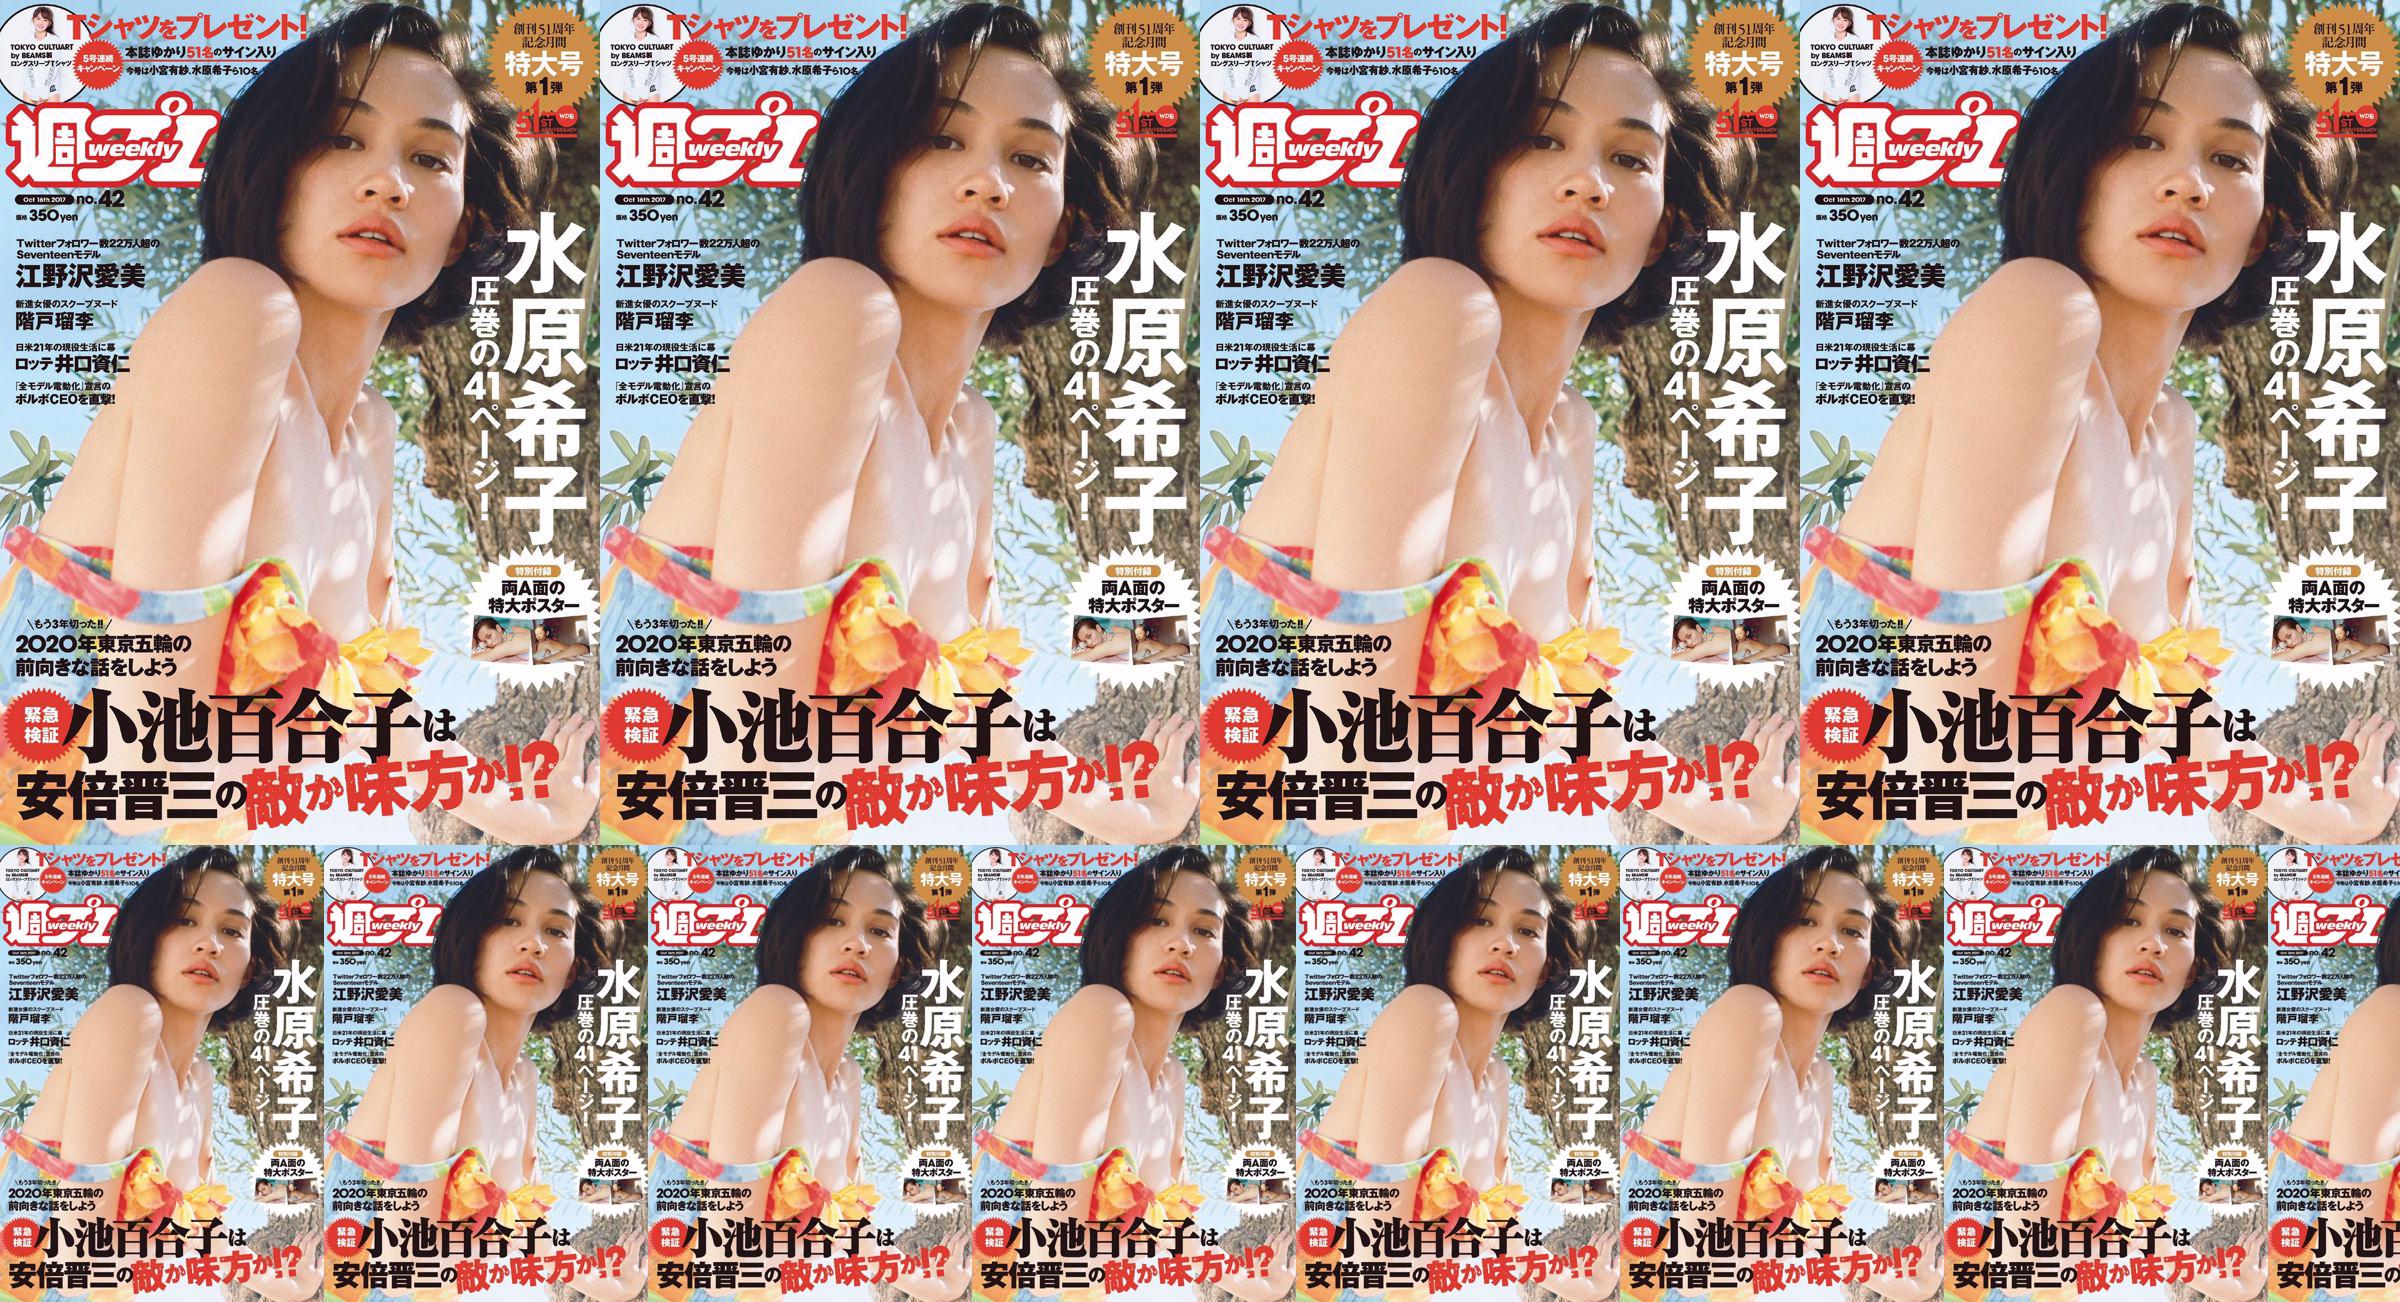 Kiko Mizuhara Manami Enosawa Serina Fukui Miu Nakamura Ruri Shinato [Weekly Playboy] 2017 Majalah Foto No.42 No.dfa0ae Halaman 1